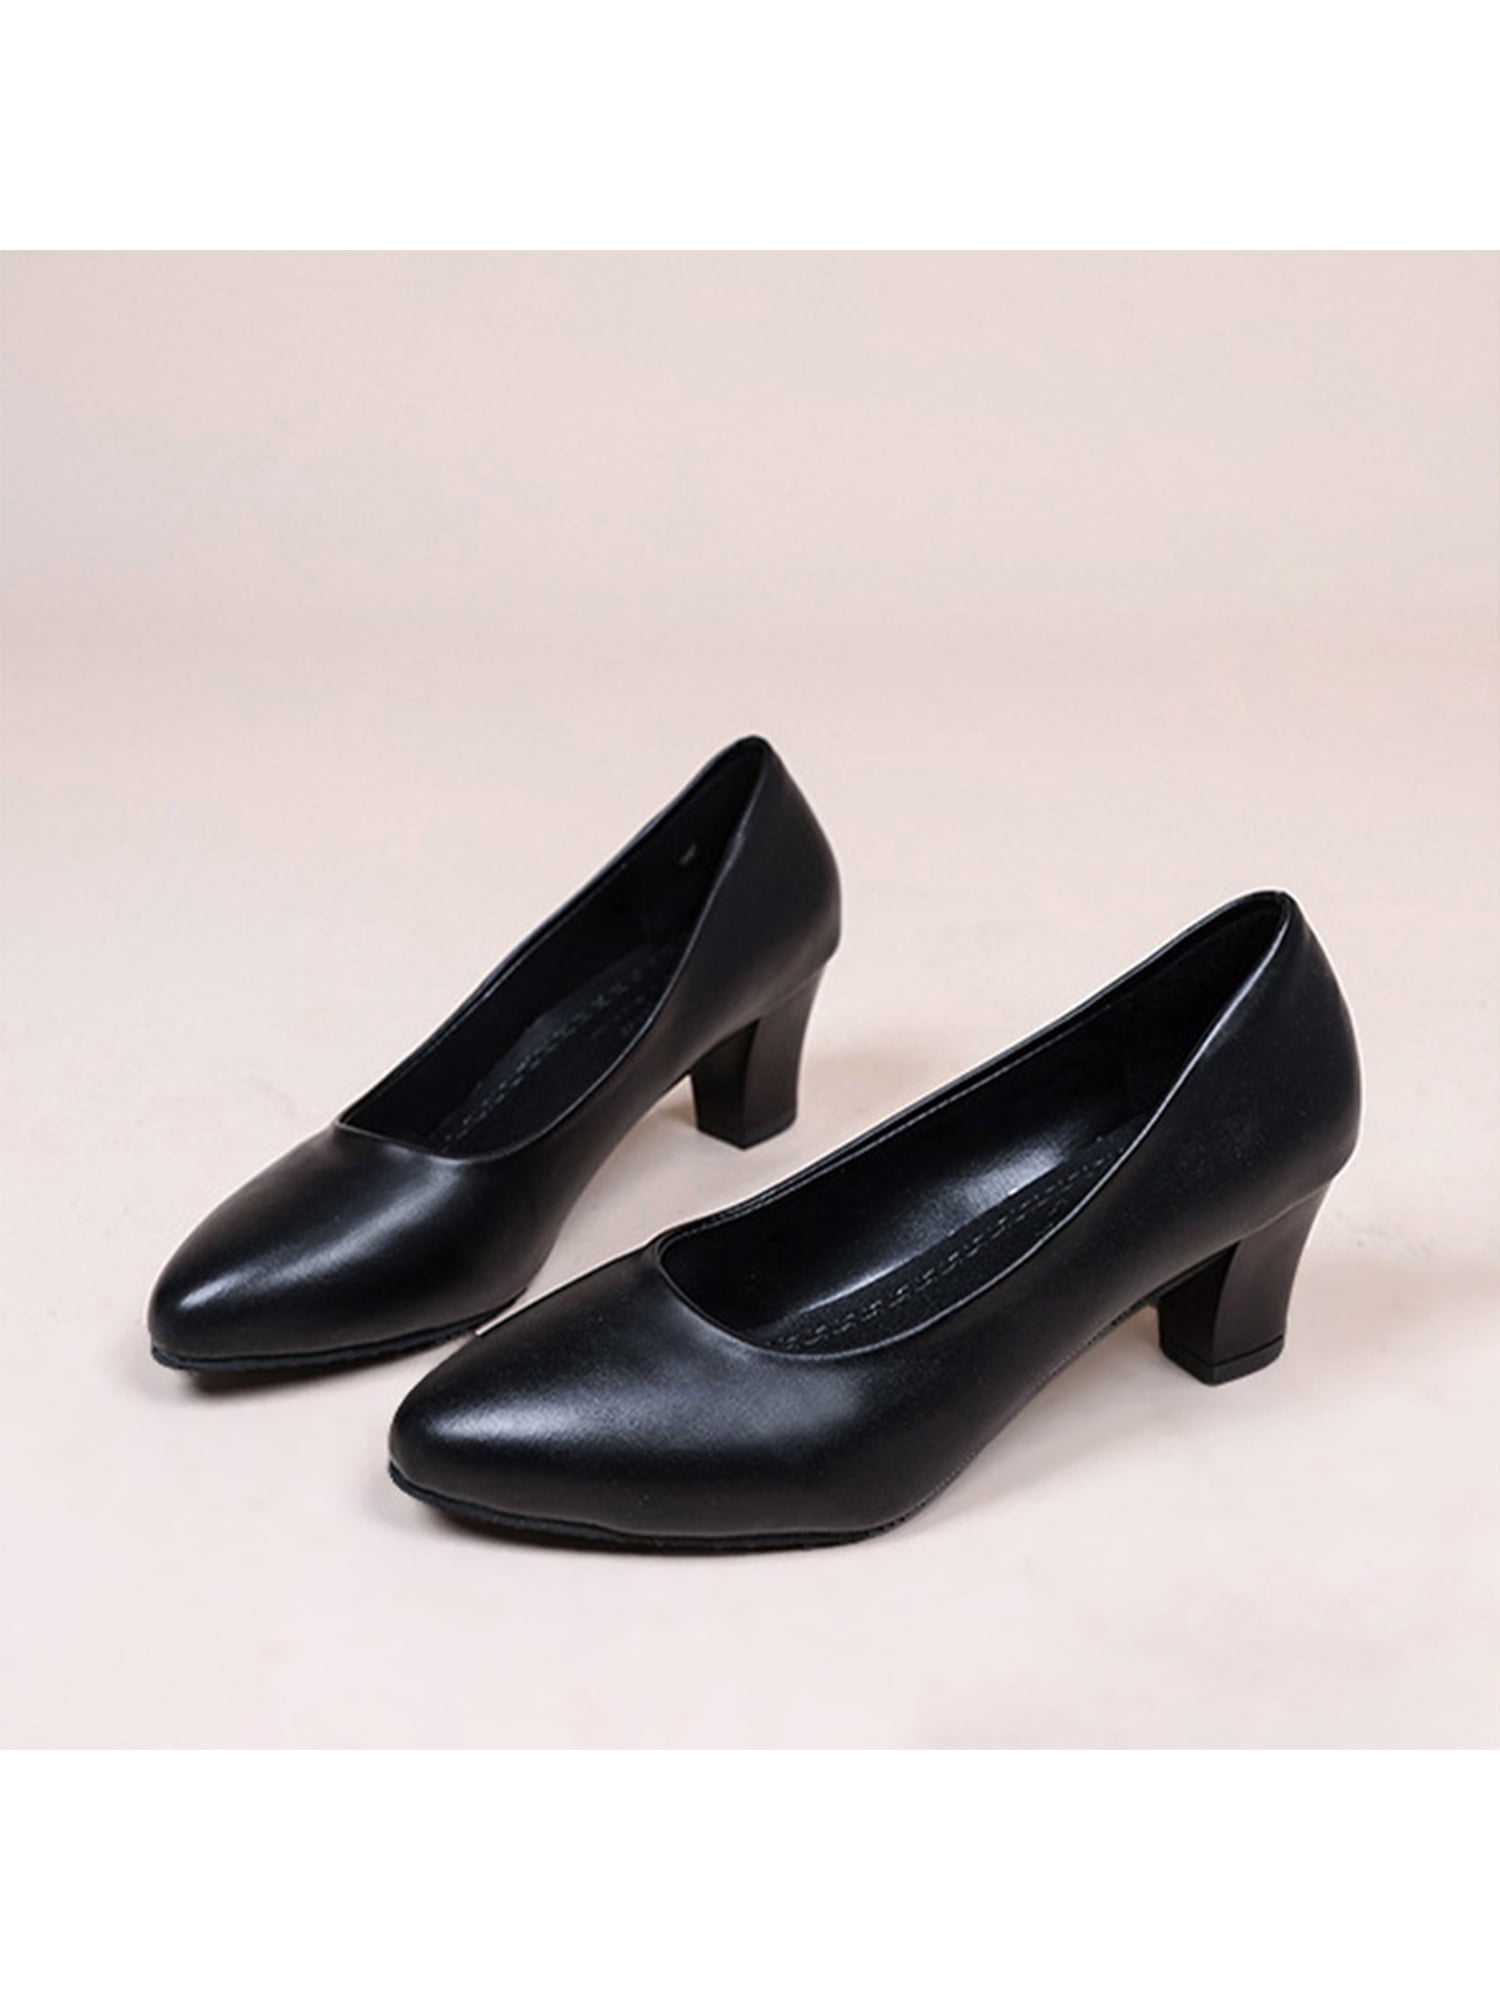 Women's Shoes | Ann Taylor | Ann Taylor